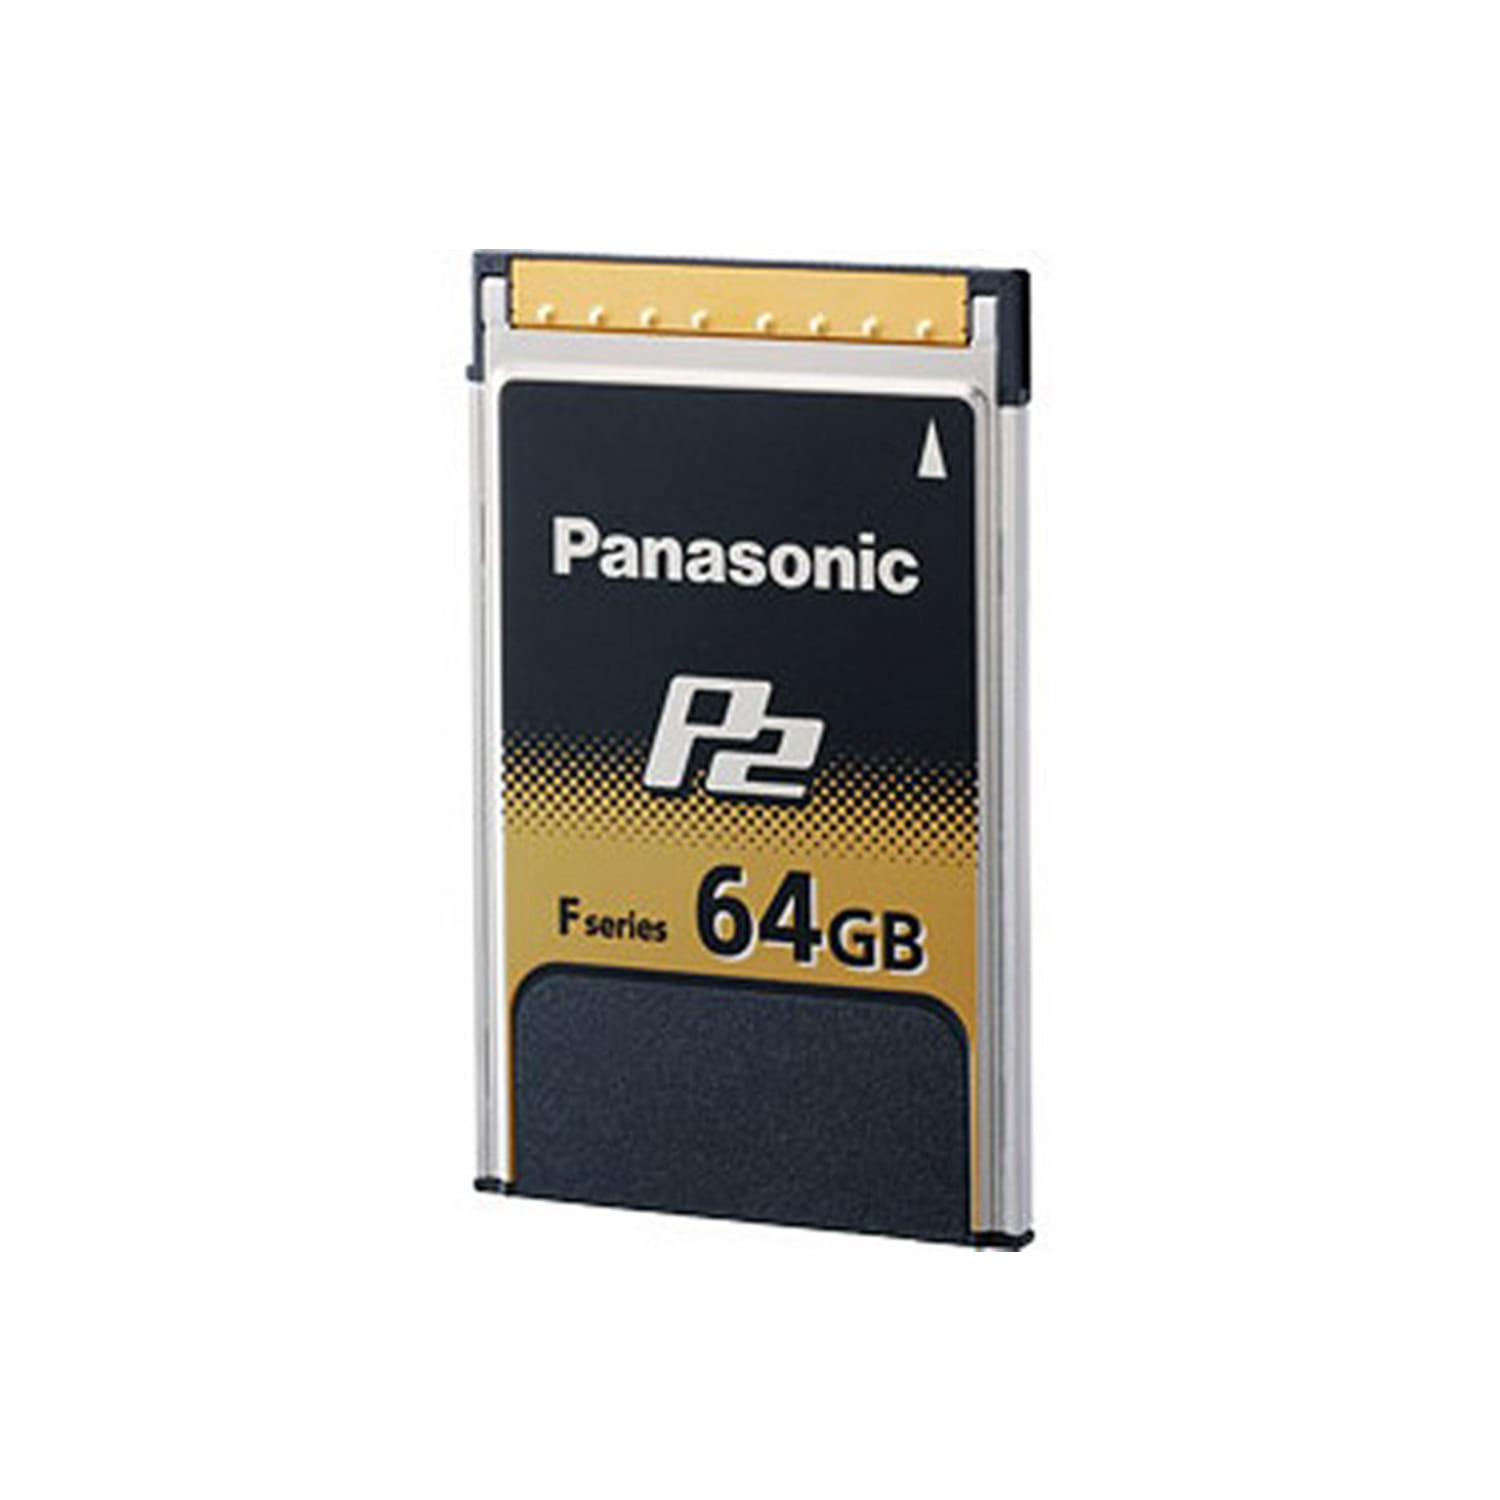 P2 card AJ-P2E064FG (64GB)